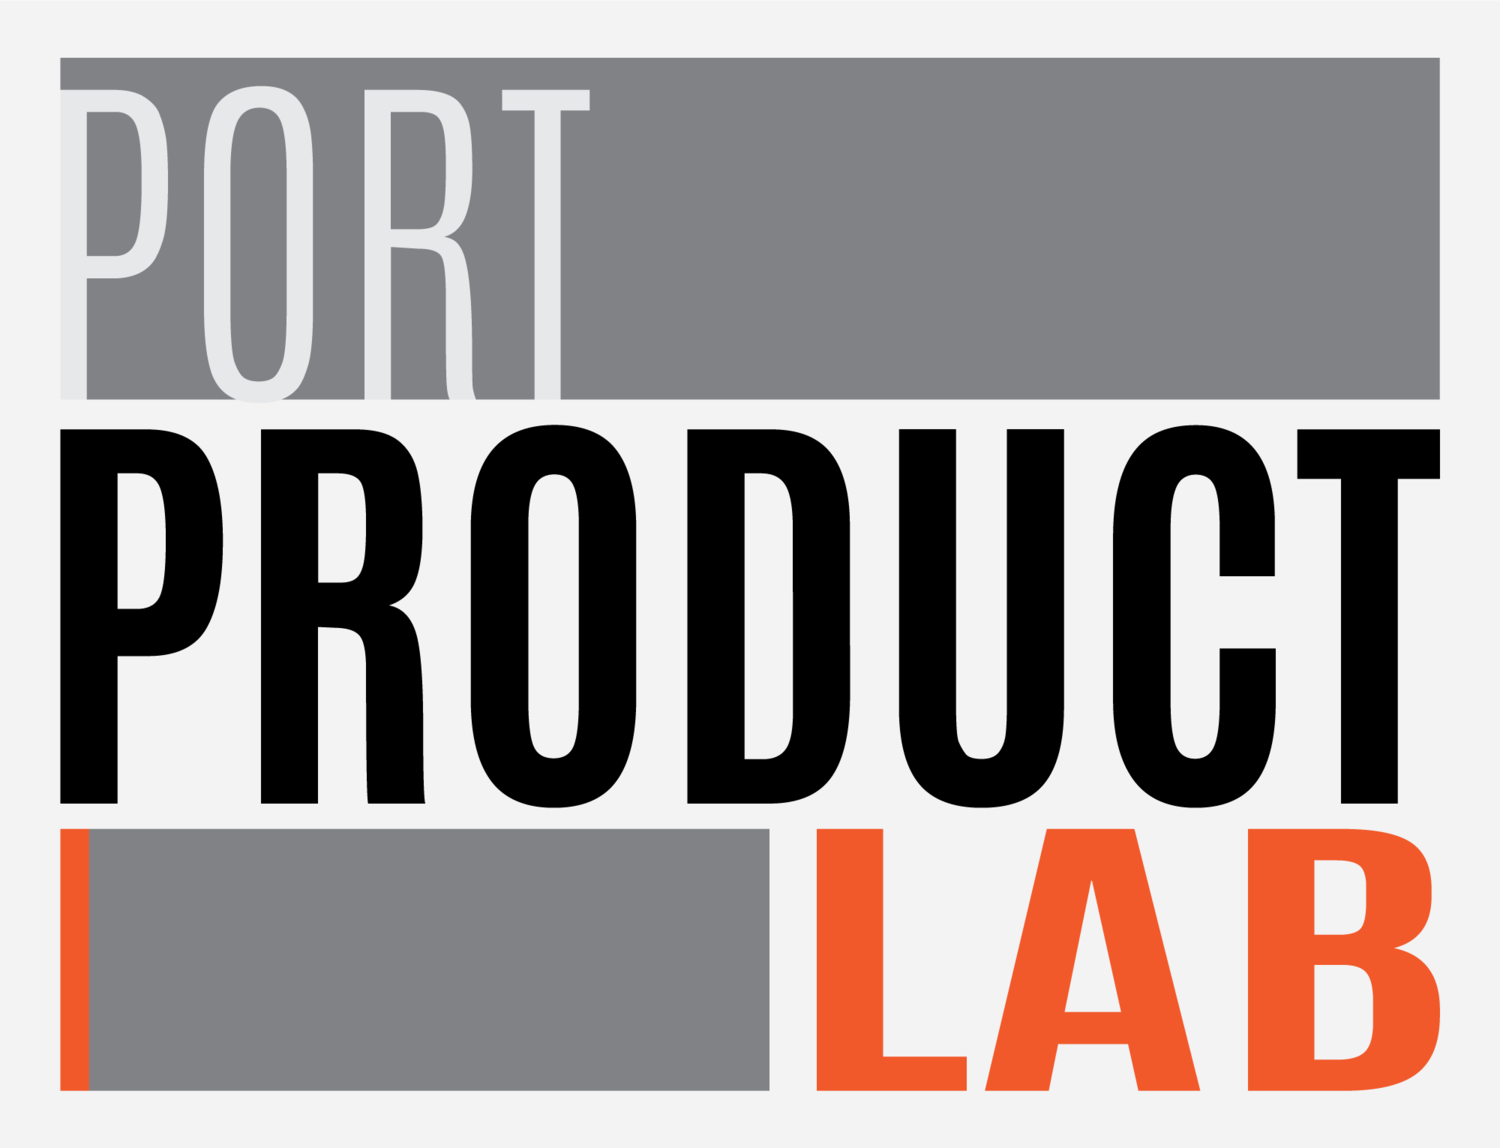 Port Product Lab